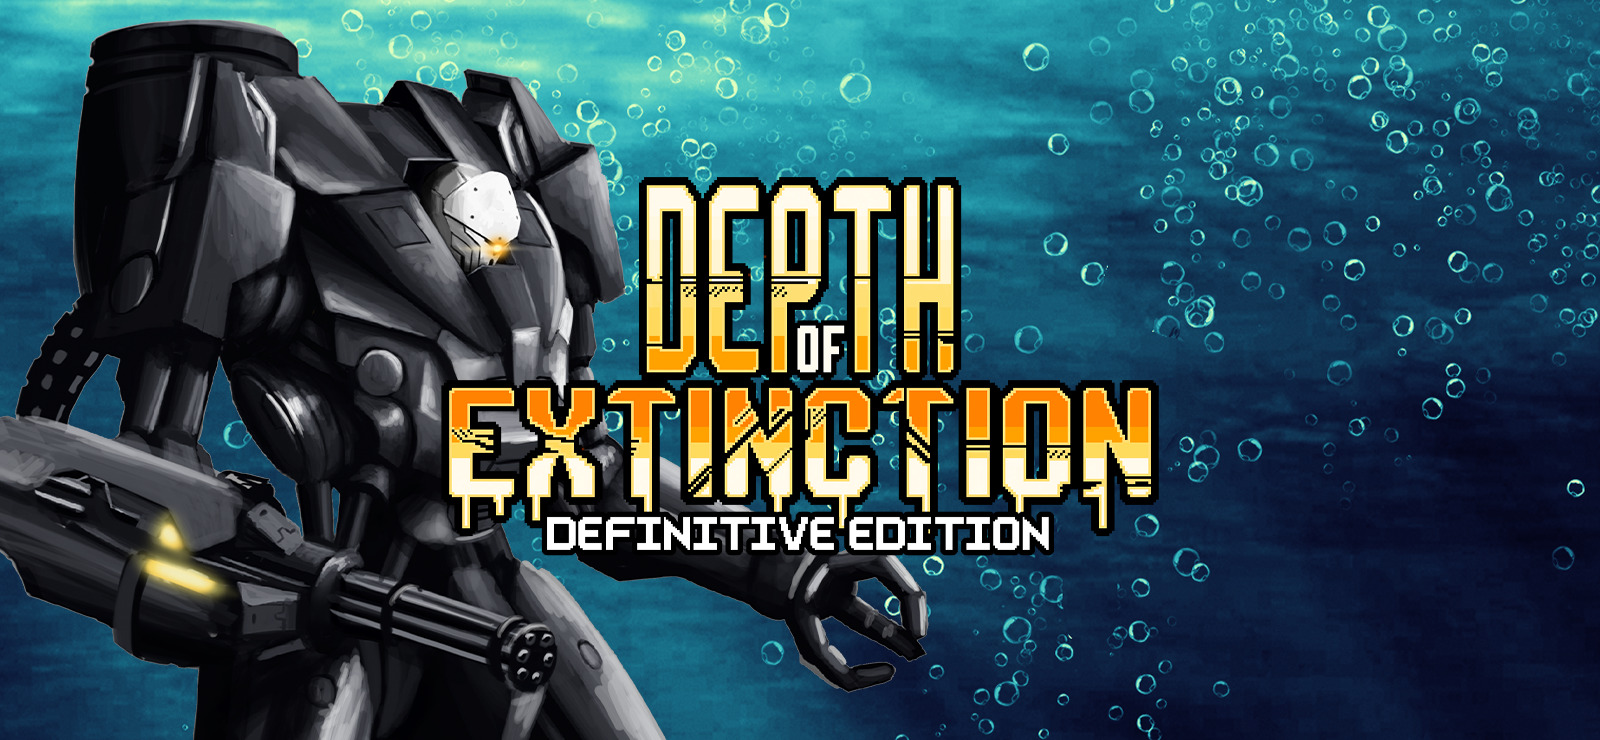 endling extinction download free